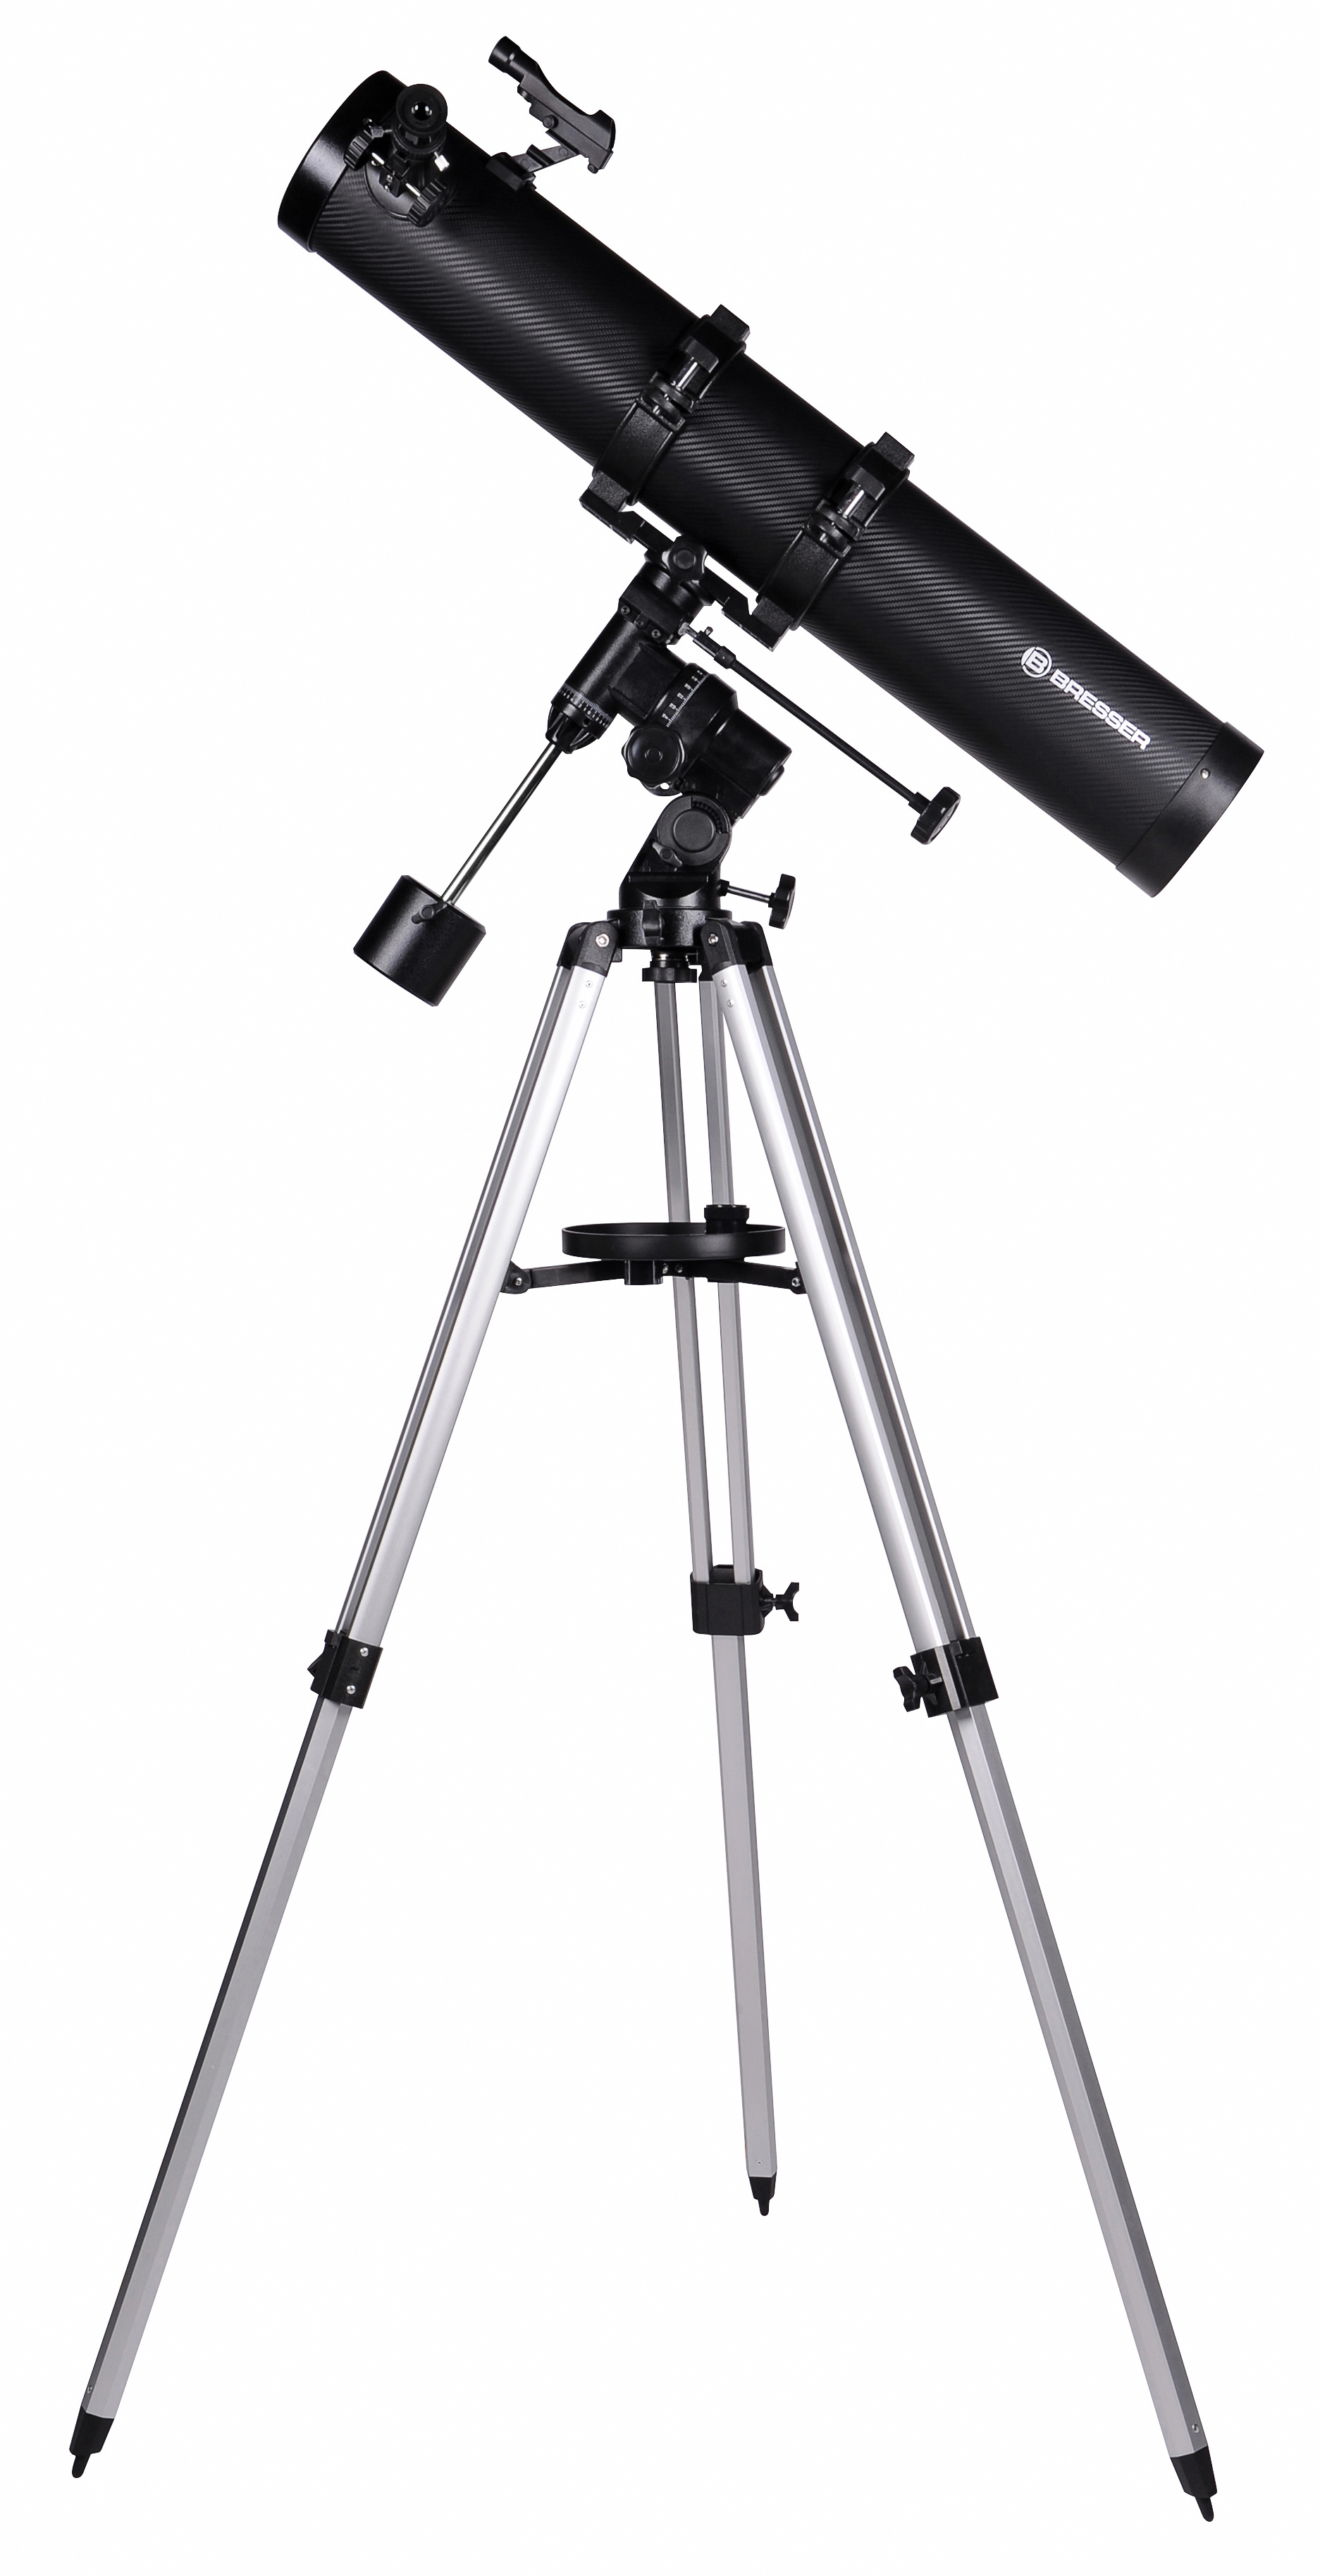 BRESSER Galaxia 114/900 EQ3 Spiegelteleskop mit Smartphone-Adapter & Sonnenfilter (Refurbished)